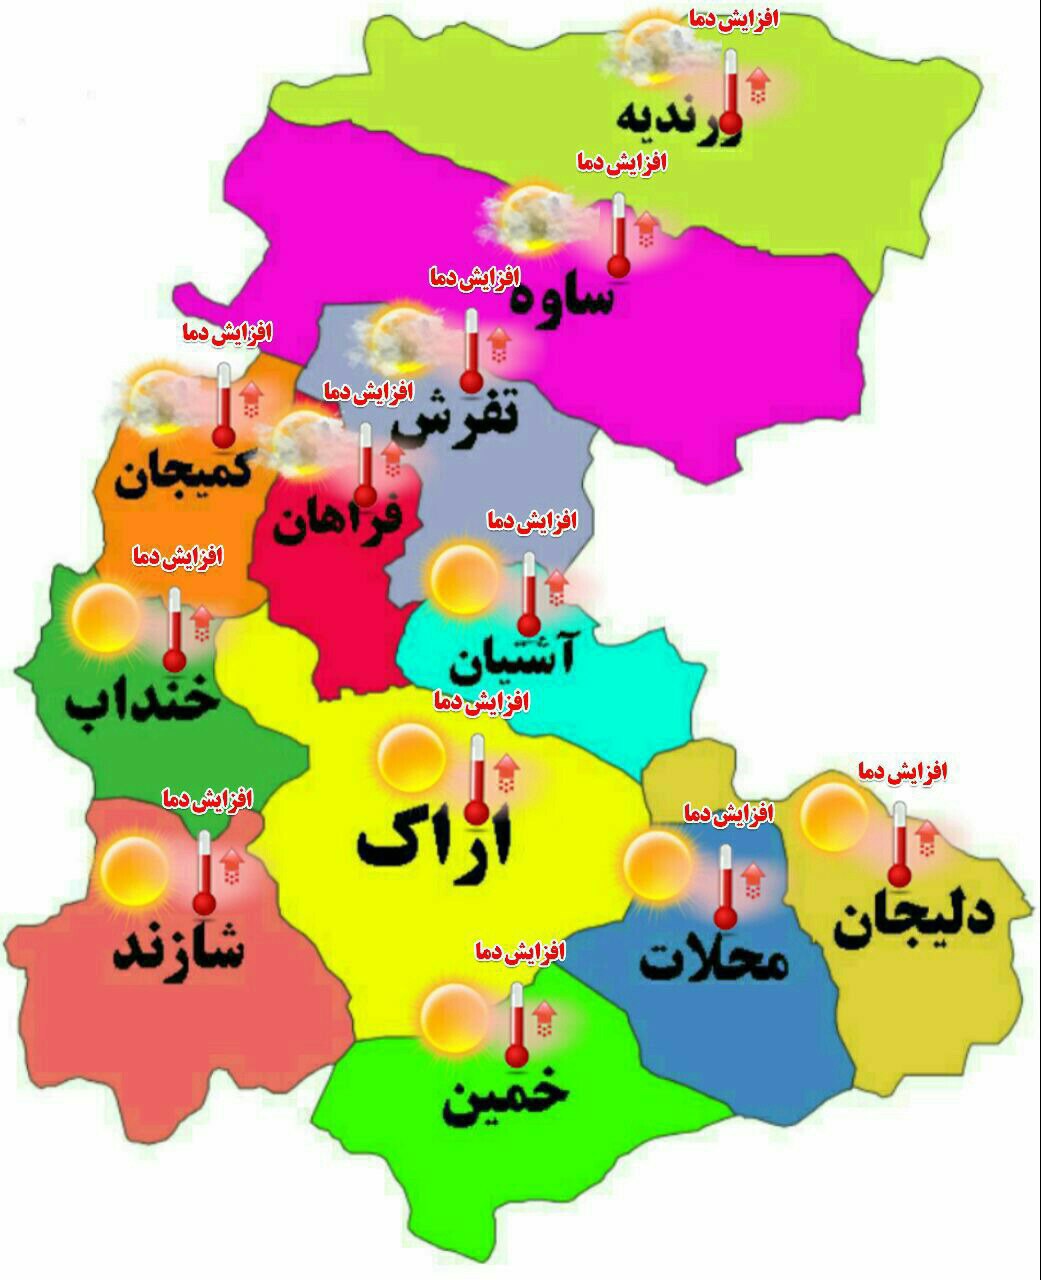 پیش بینی وضعیت جوی مناطق استان مرکزی در ۲۴ ساعت آینده